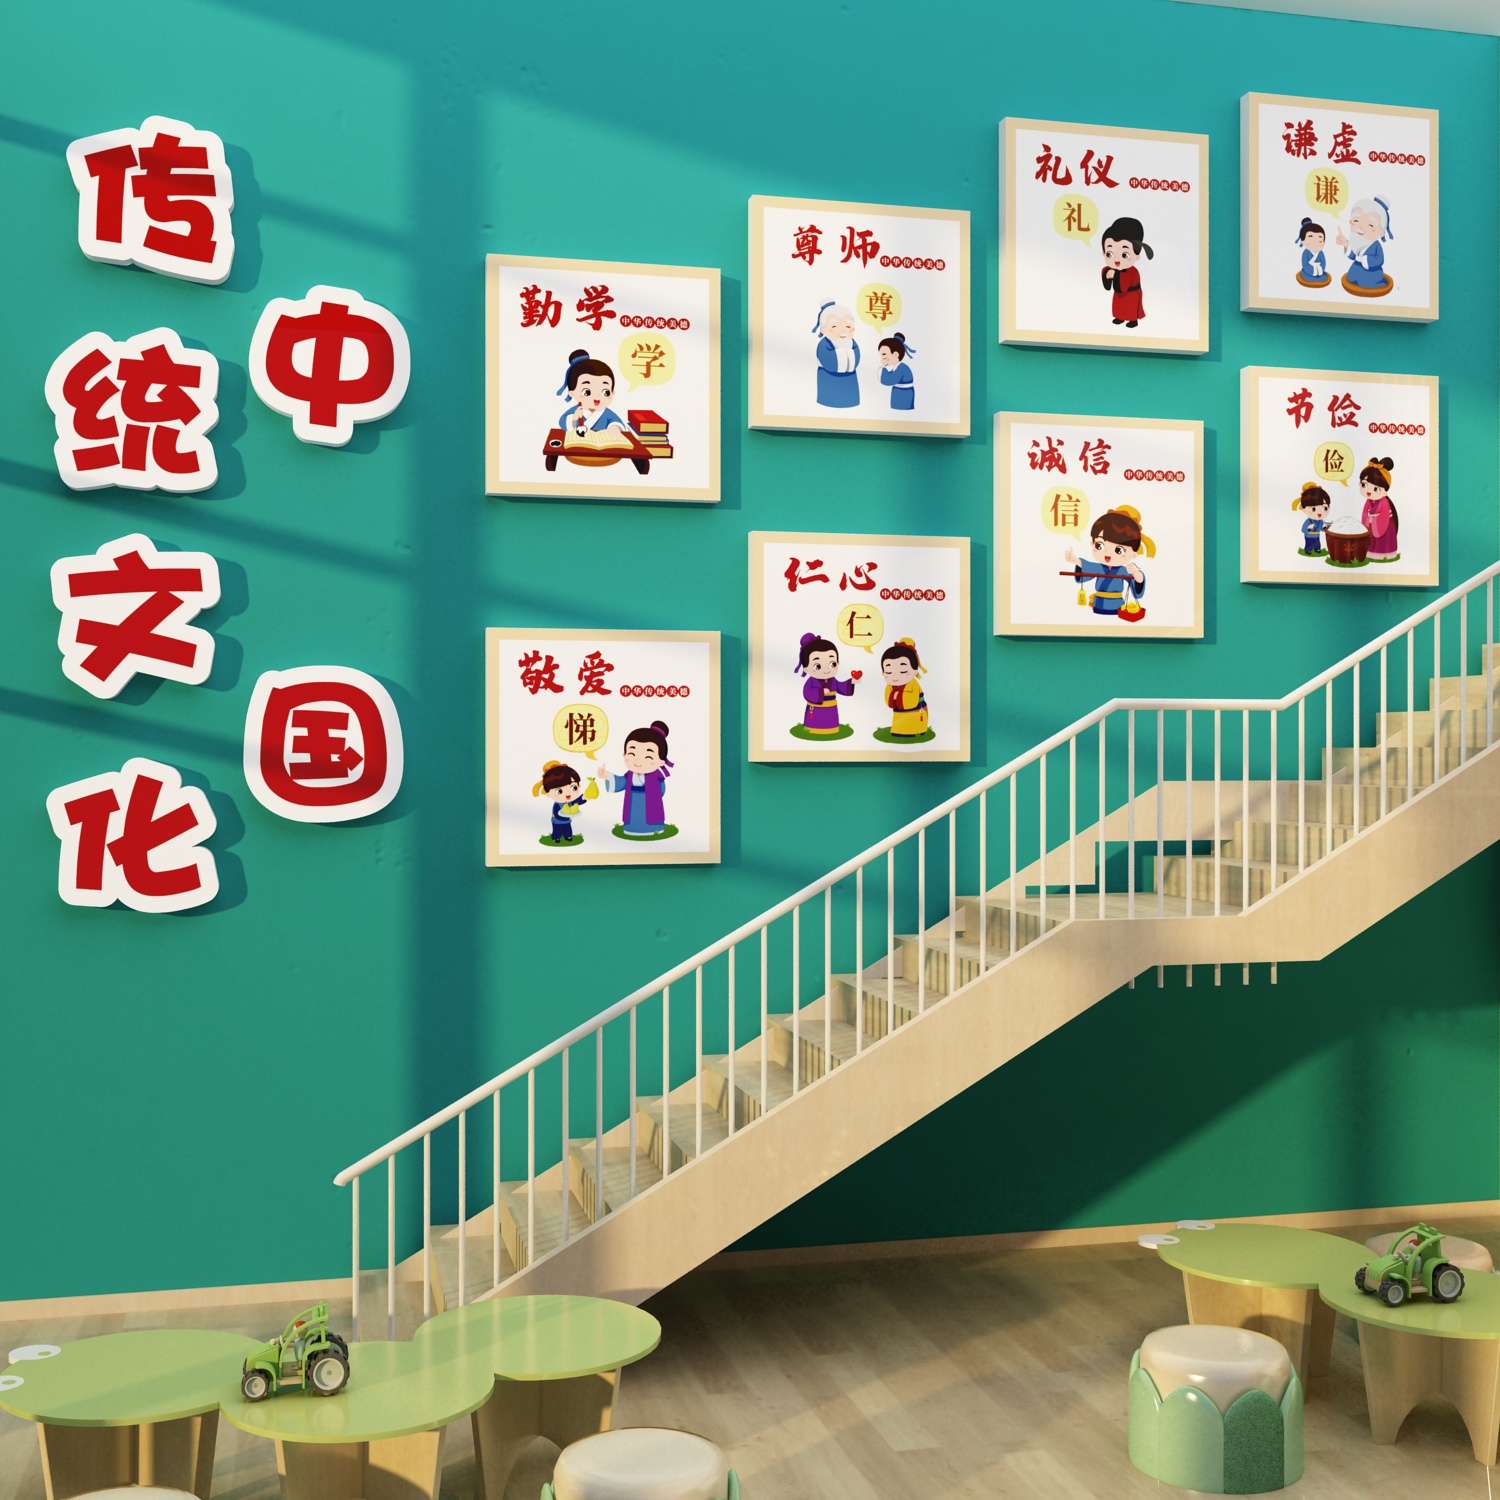 中国传统文化环创设计高端幼儿园楼梯